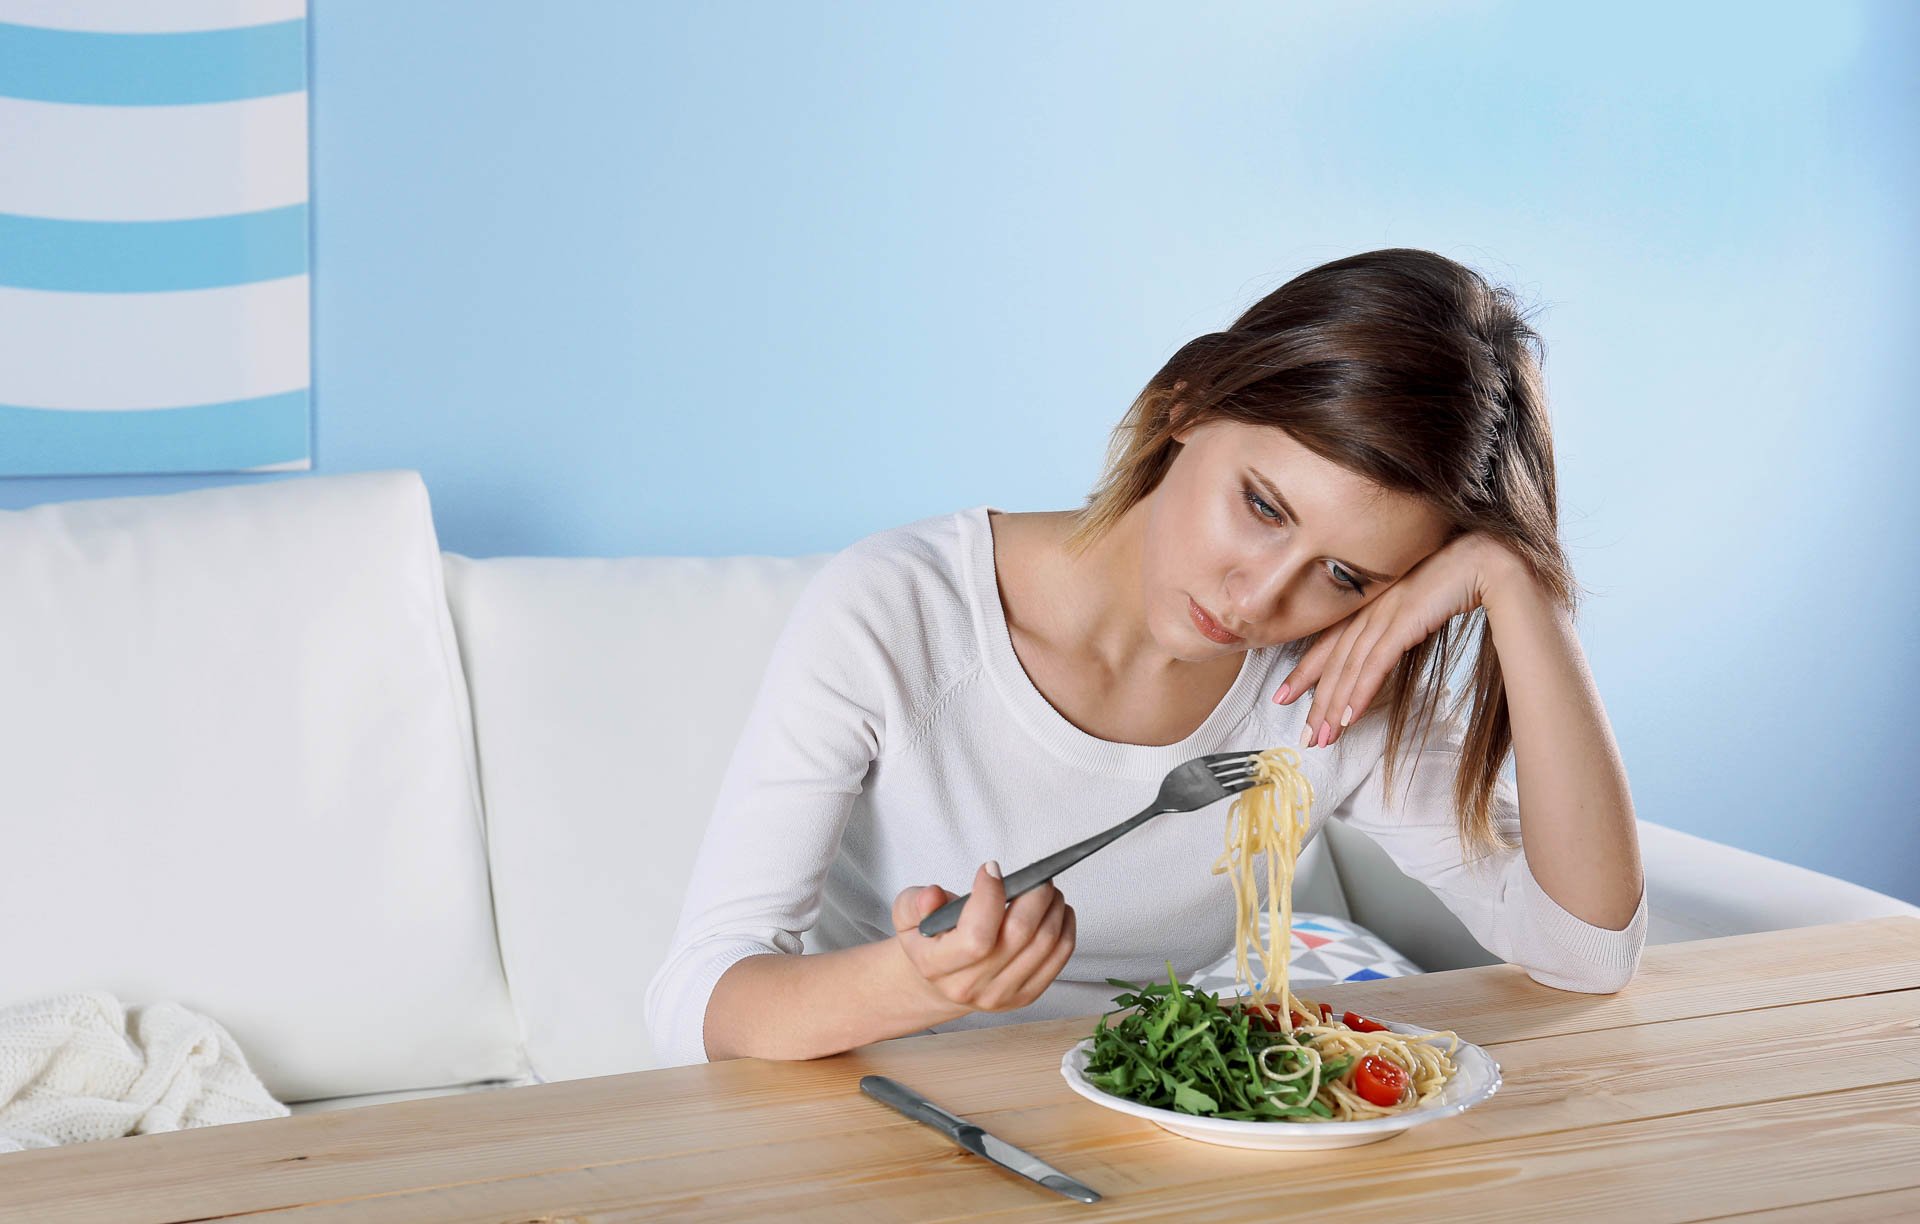 "إنستجرام" يطرح وسائل مساعدة لمن يعانون من اضطرابات في الأكل